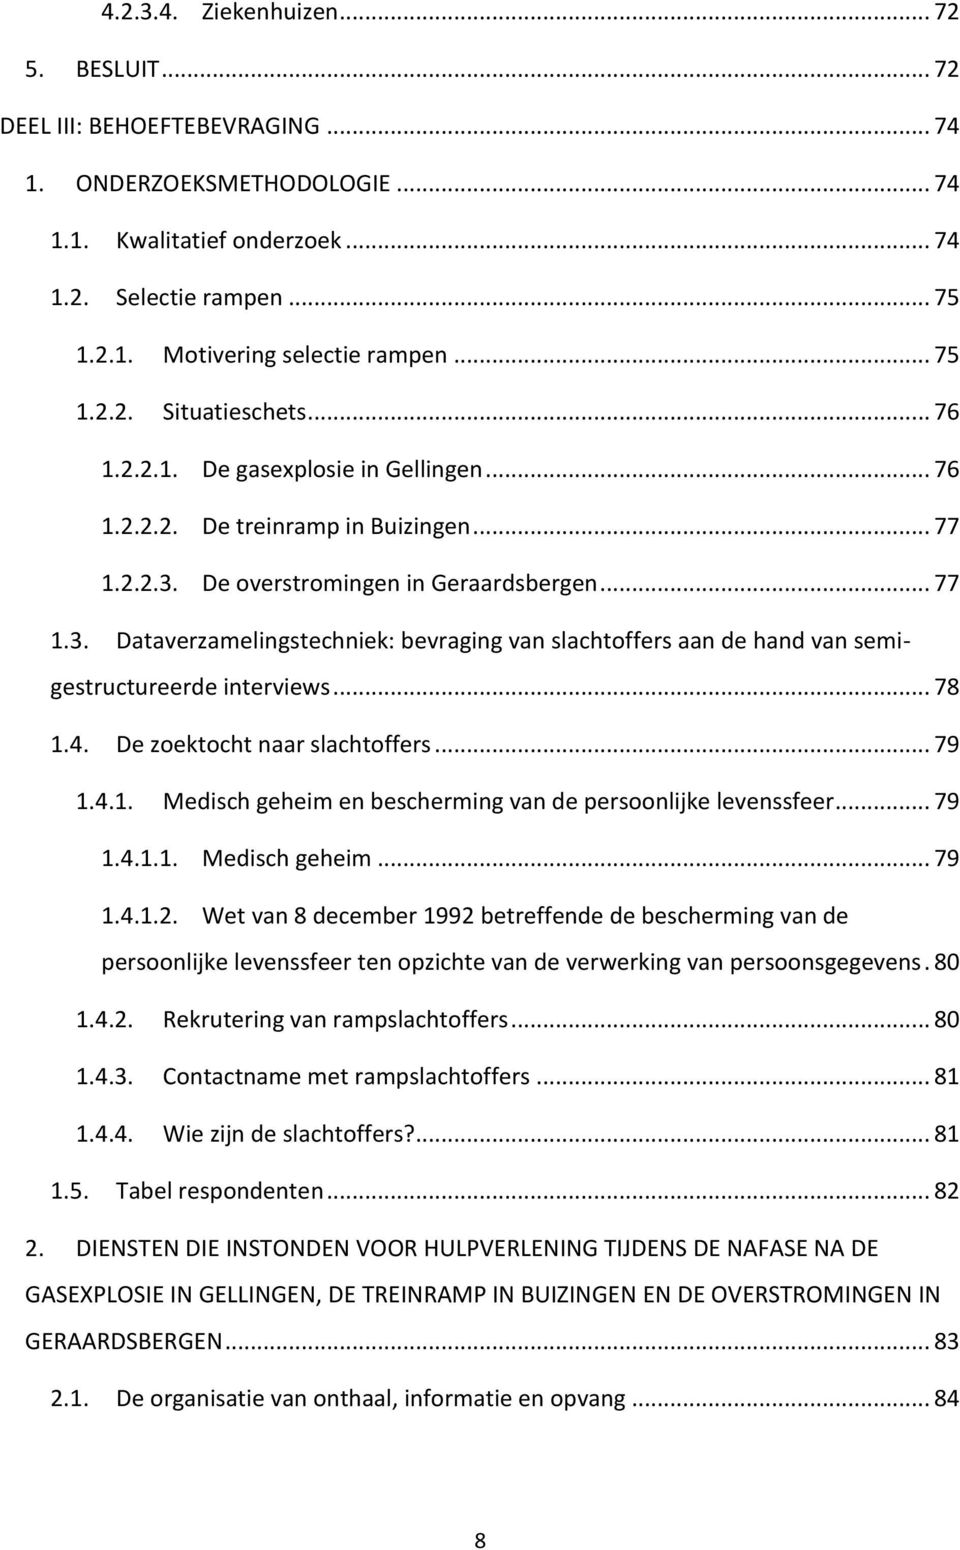 De overstromingen in Geraardsbergen... 77 1.3. Dataverzamelingstechniek: bevraging van slachtoffers aan de hand van semigestructureerde interviews... 78 1.4. De zoektocht naar slachtoffers... 79 1.4.1. Medisch geheim en bescherming van de persoonlijke levenssfeer.